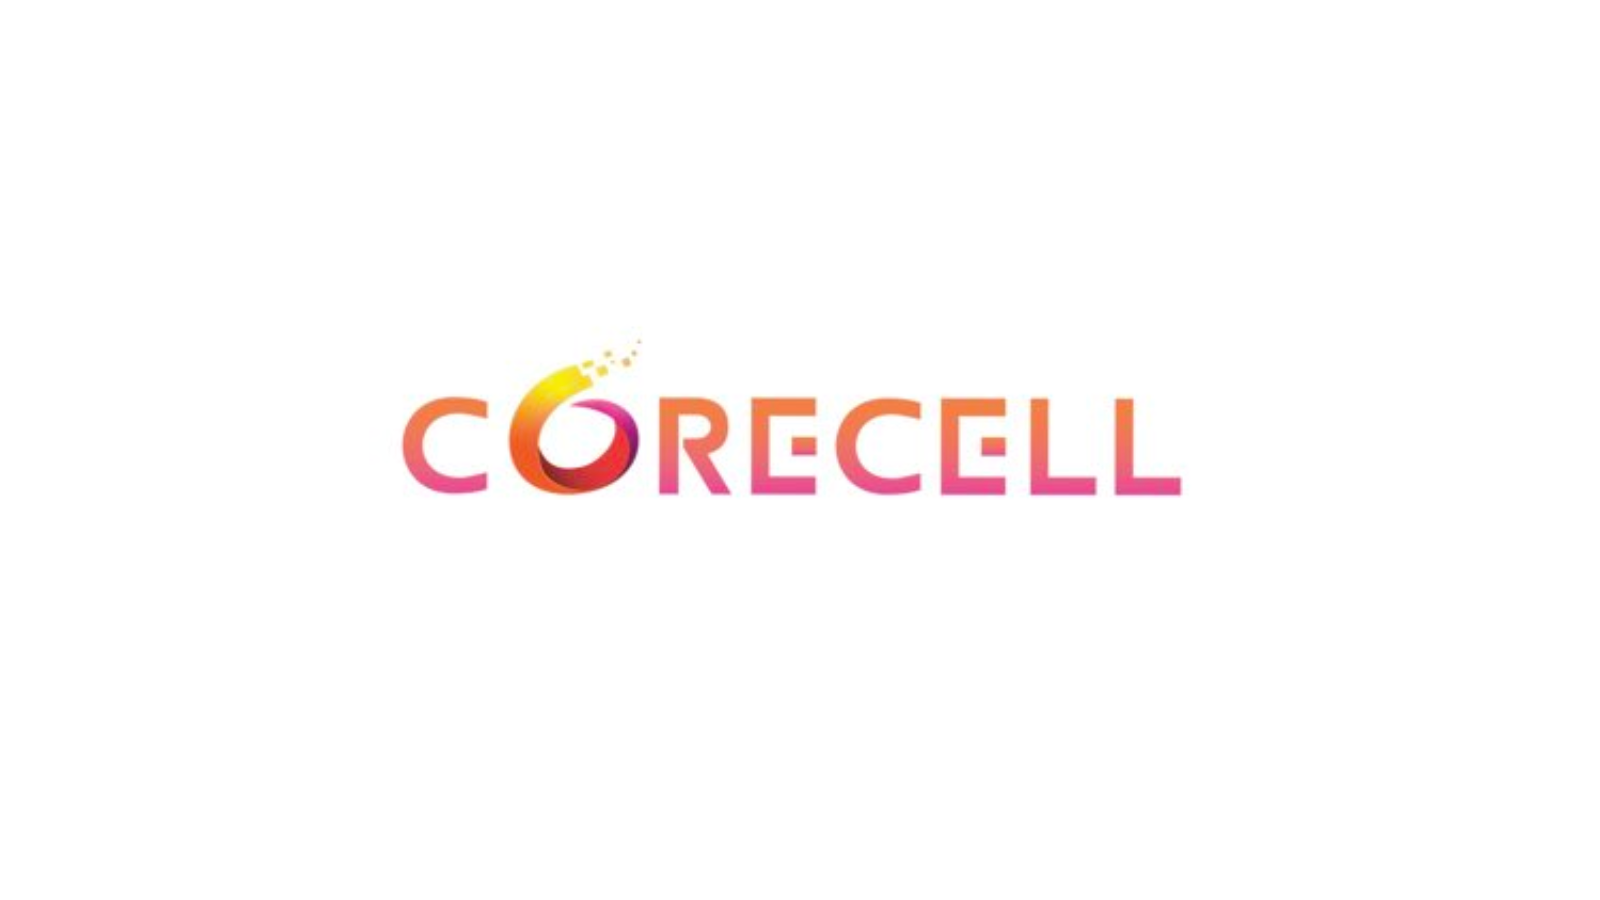 Corecell logo